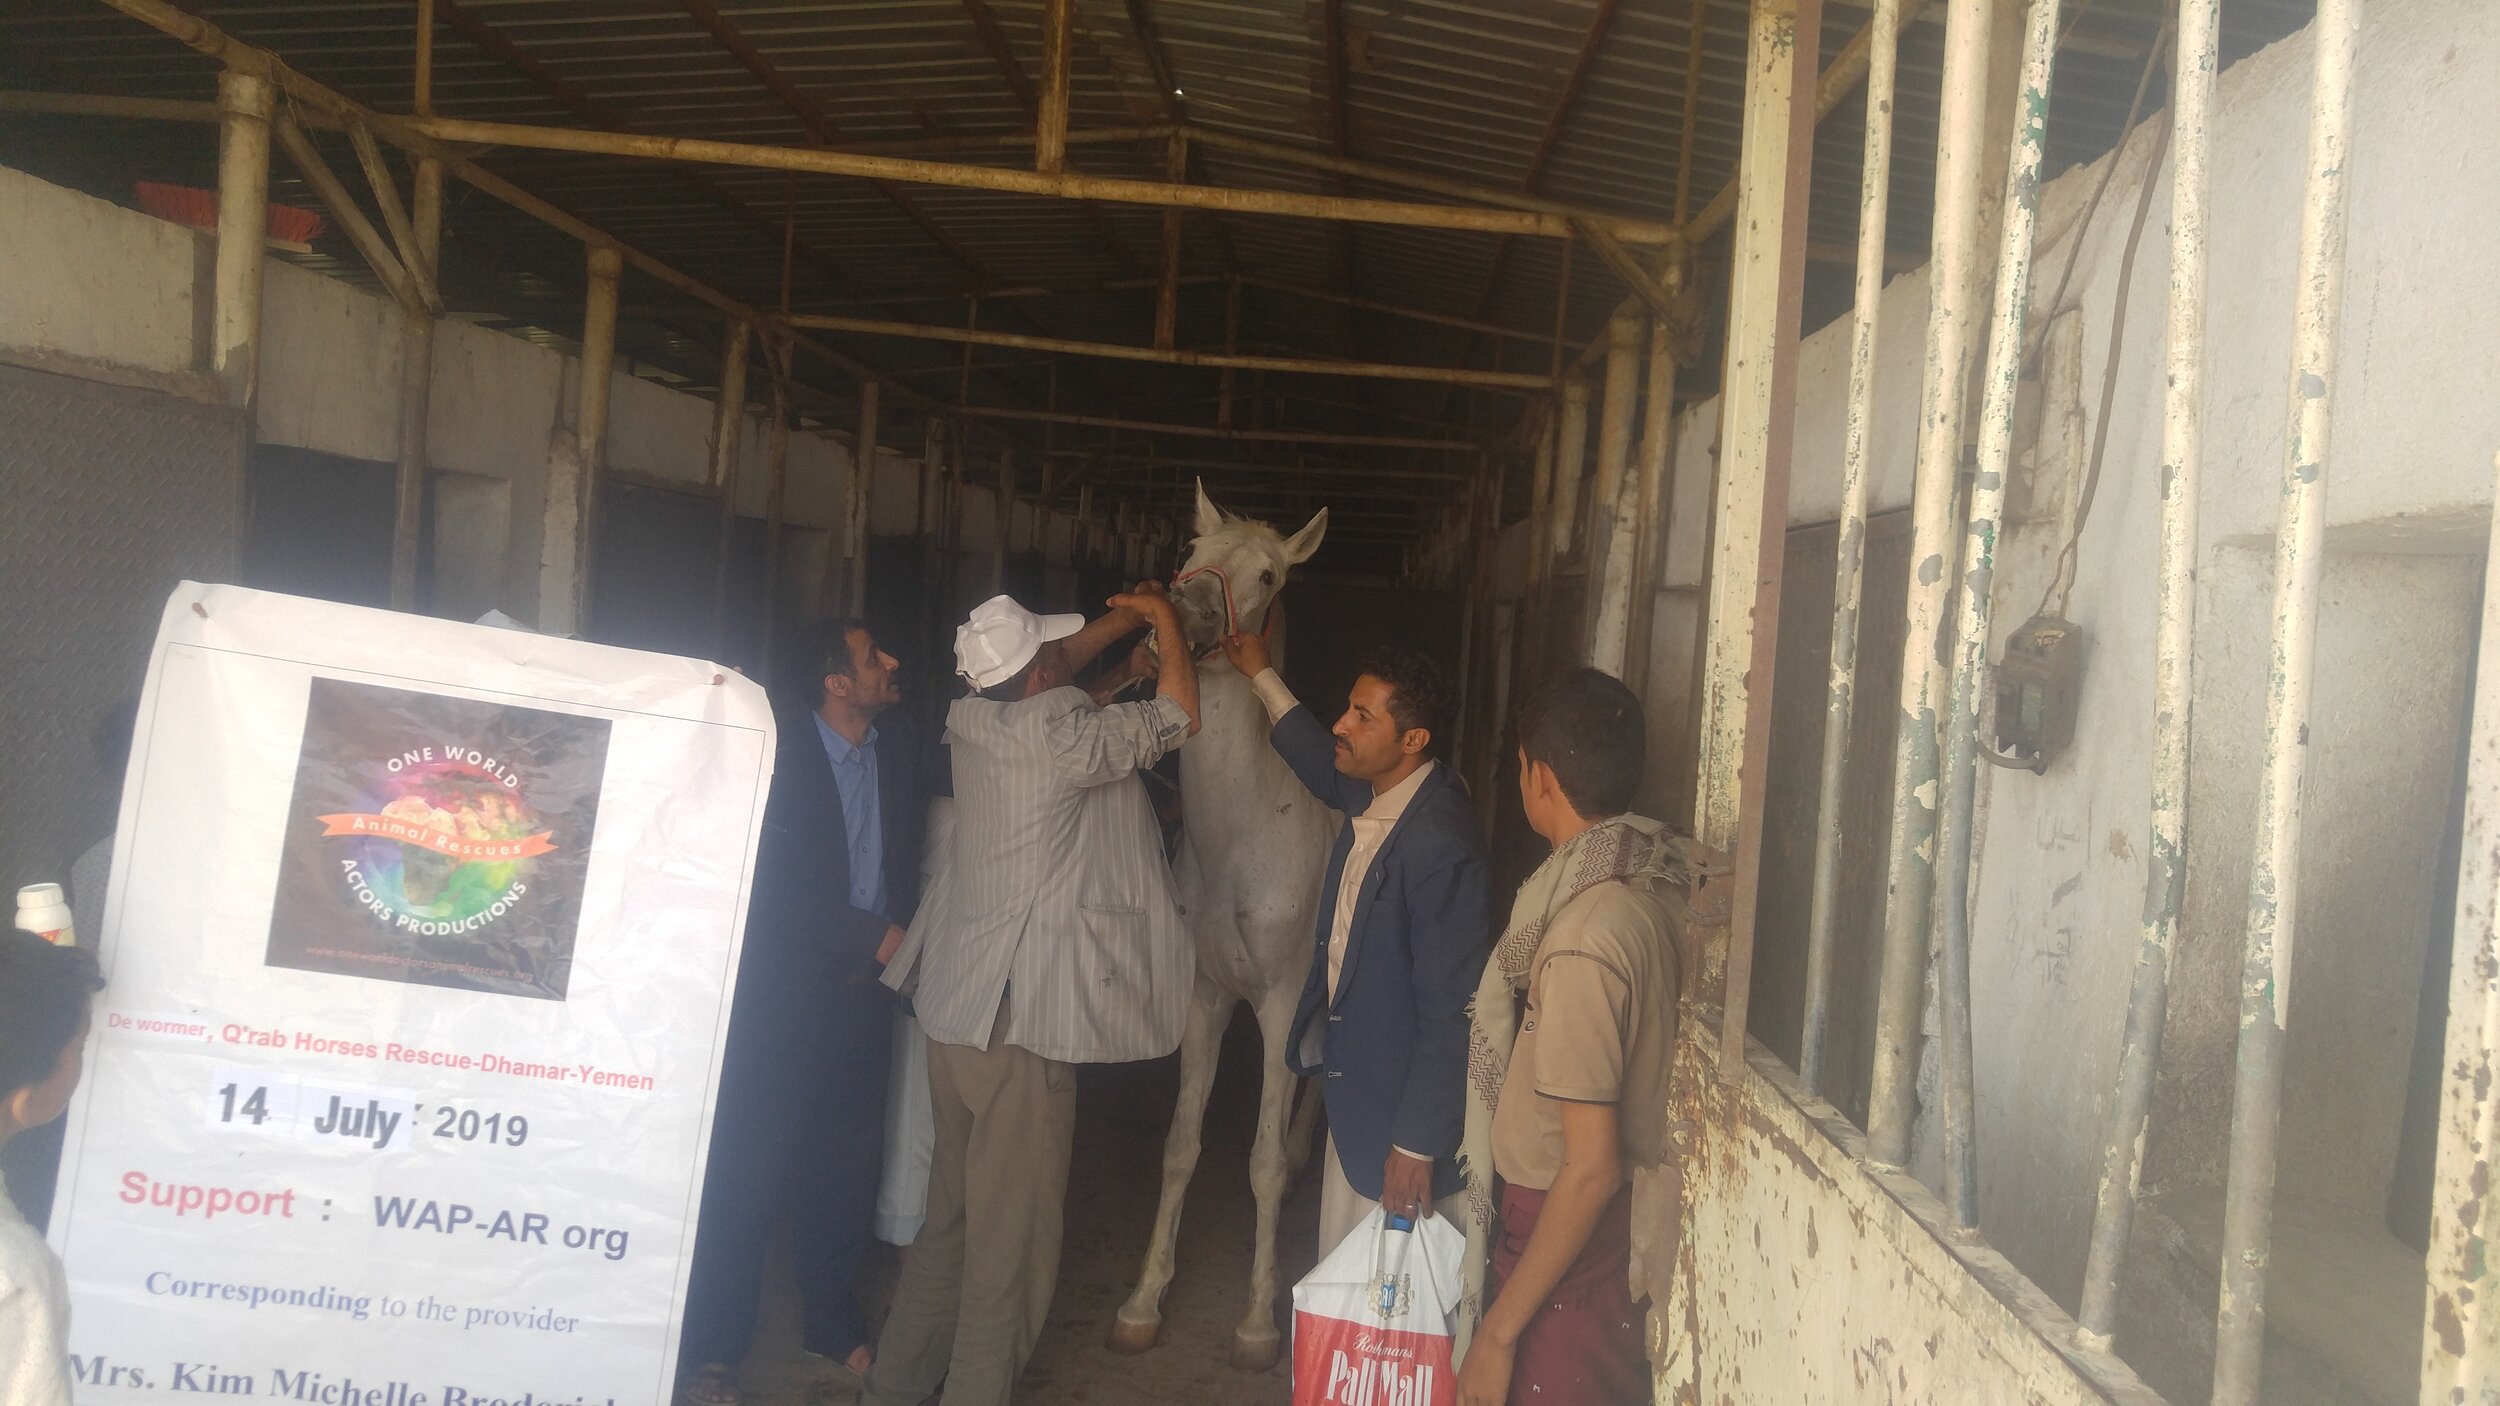 qrab worming 14 July 2019 OWAP AR Yemen Arabian horse Rescue Fateh.jpg